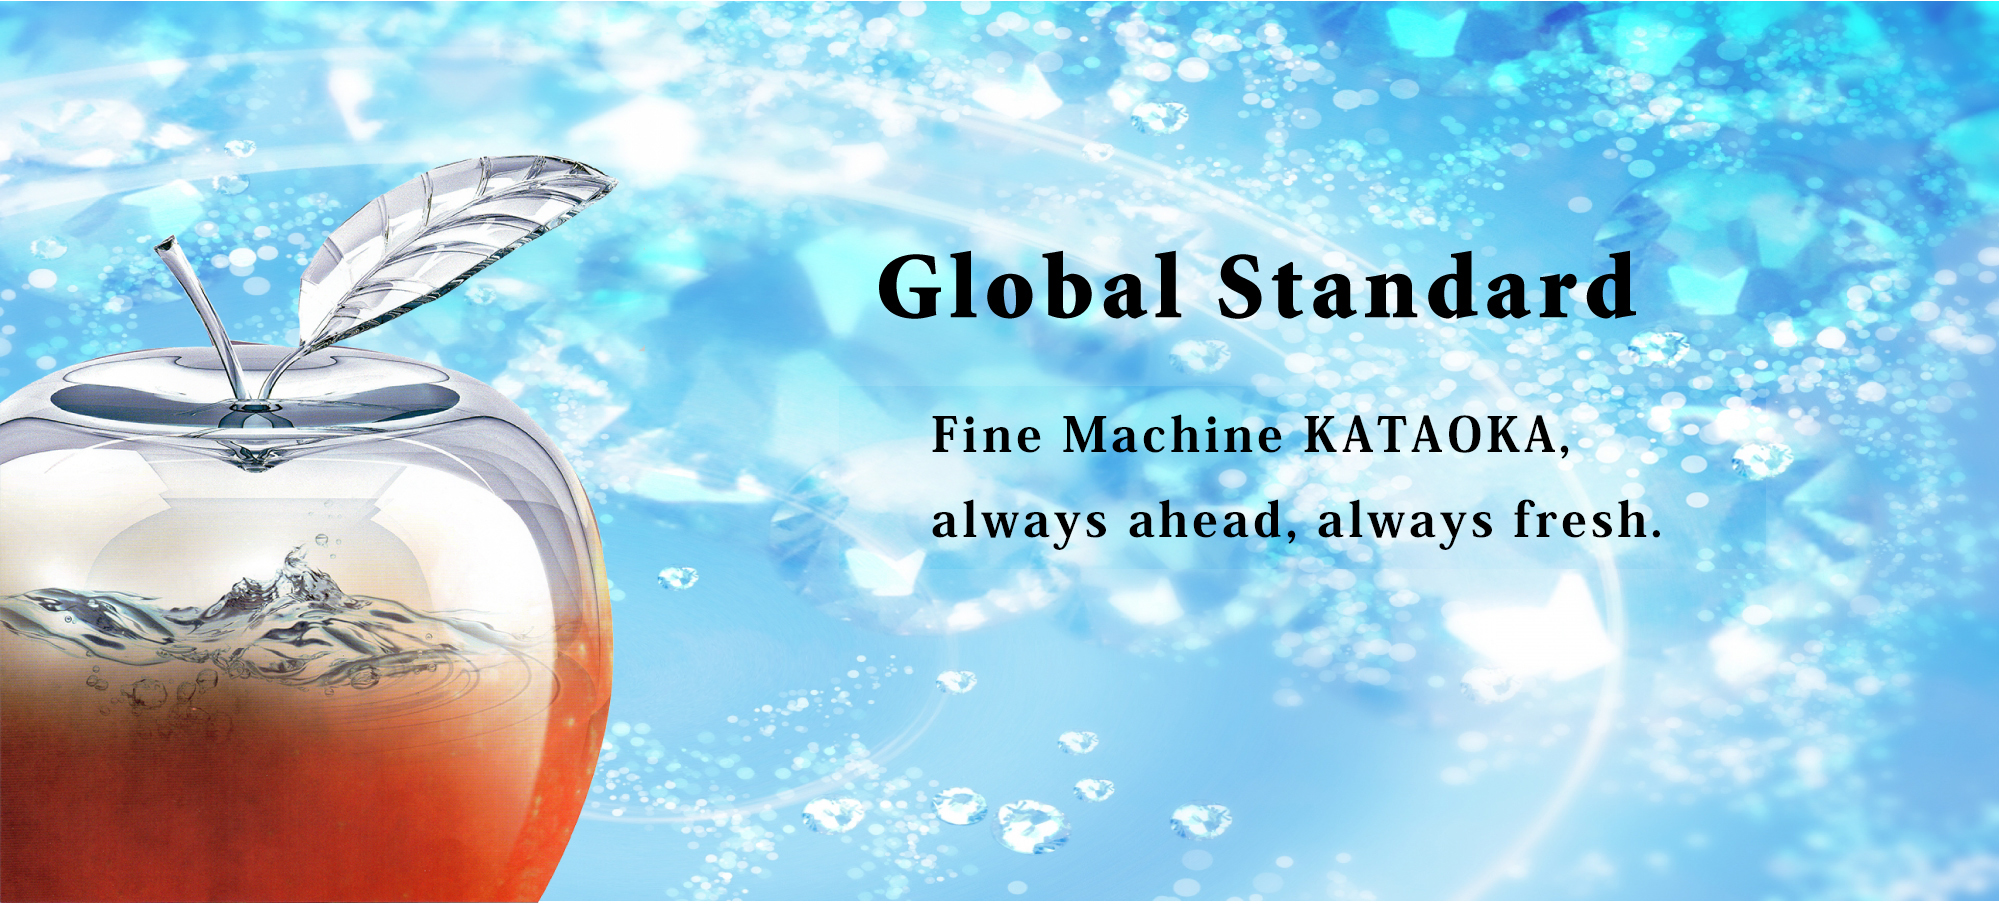 Fine Machine Kataoka Corporation image